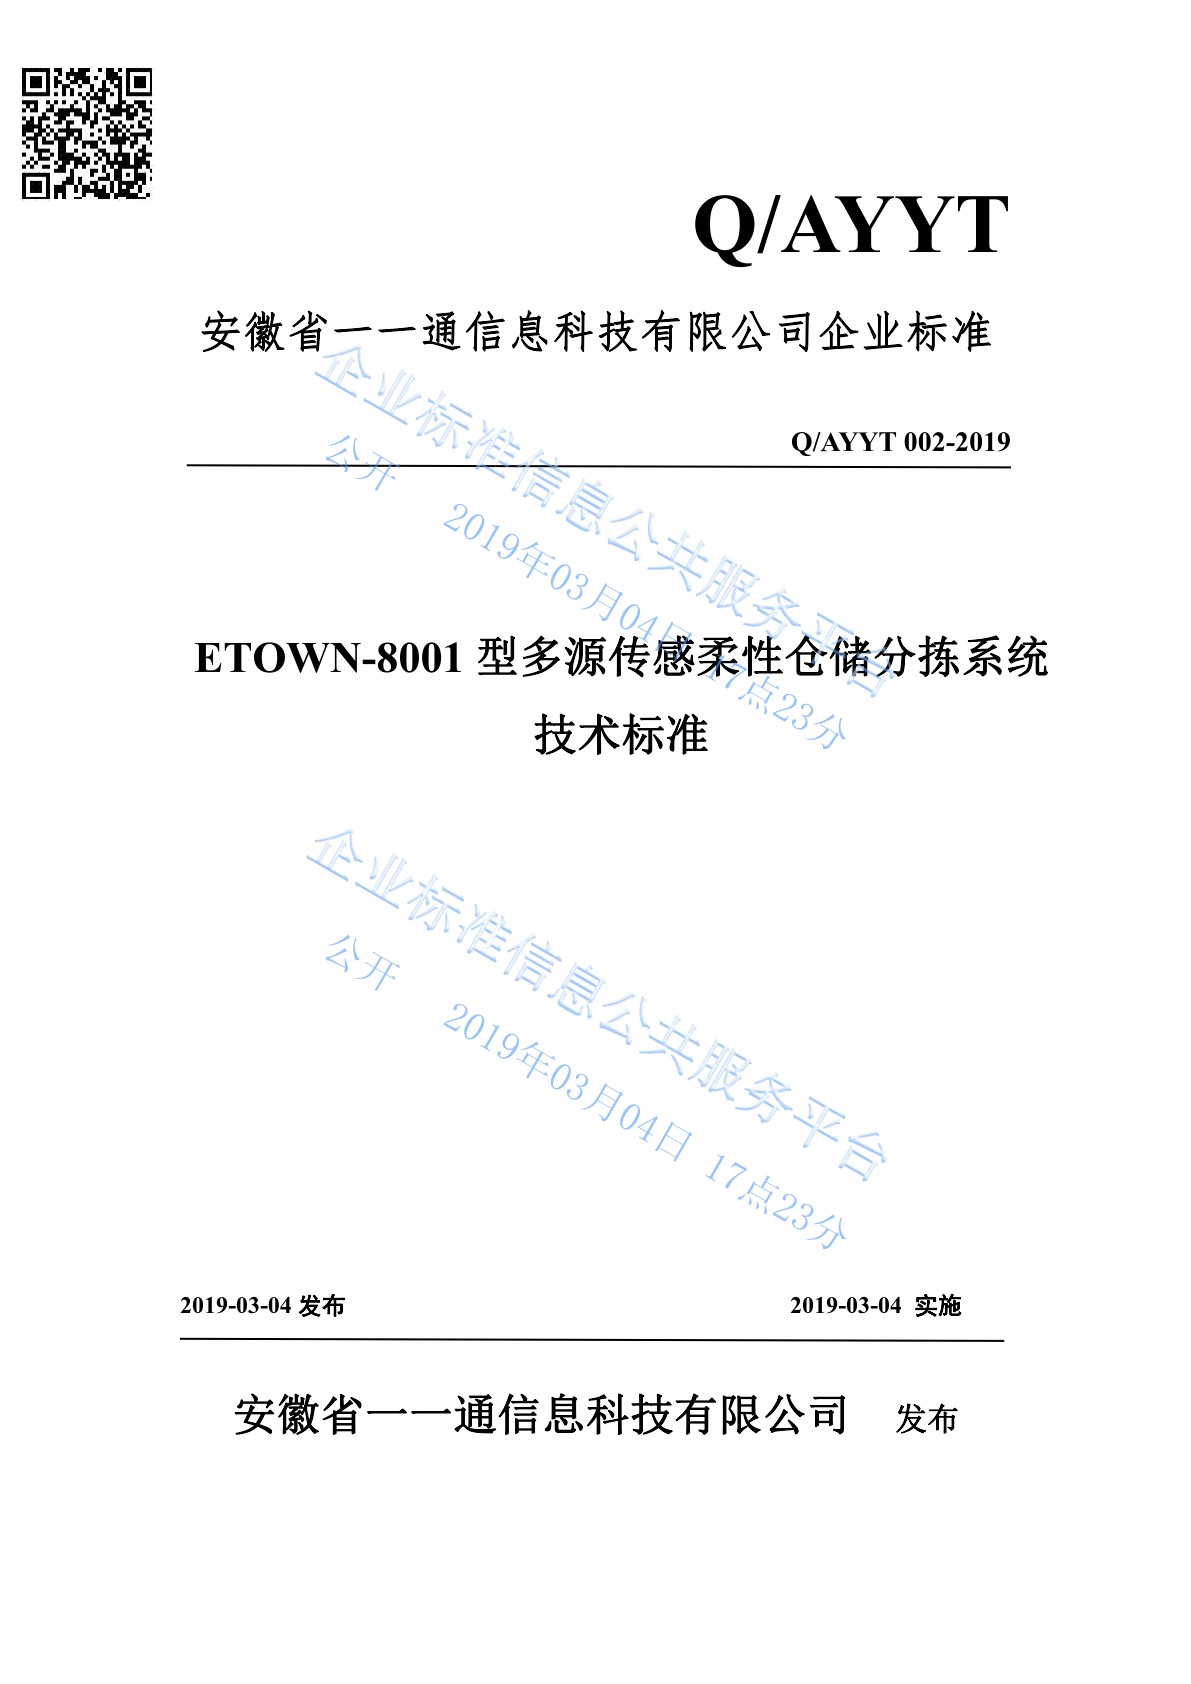 企准-ETOWN-8001多元传感柔性仓储分拣系统-1.jpg